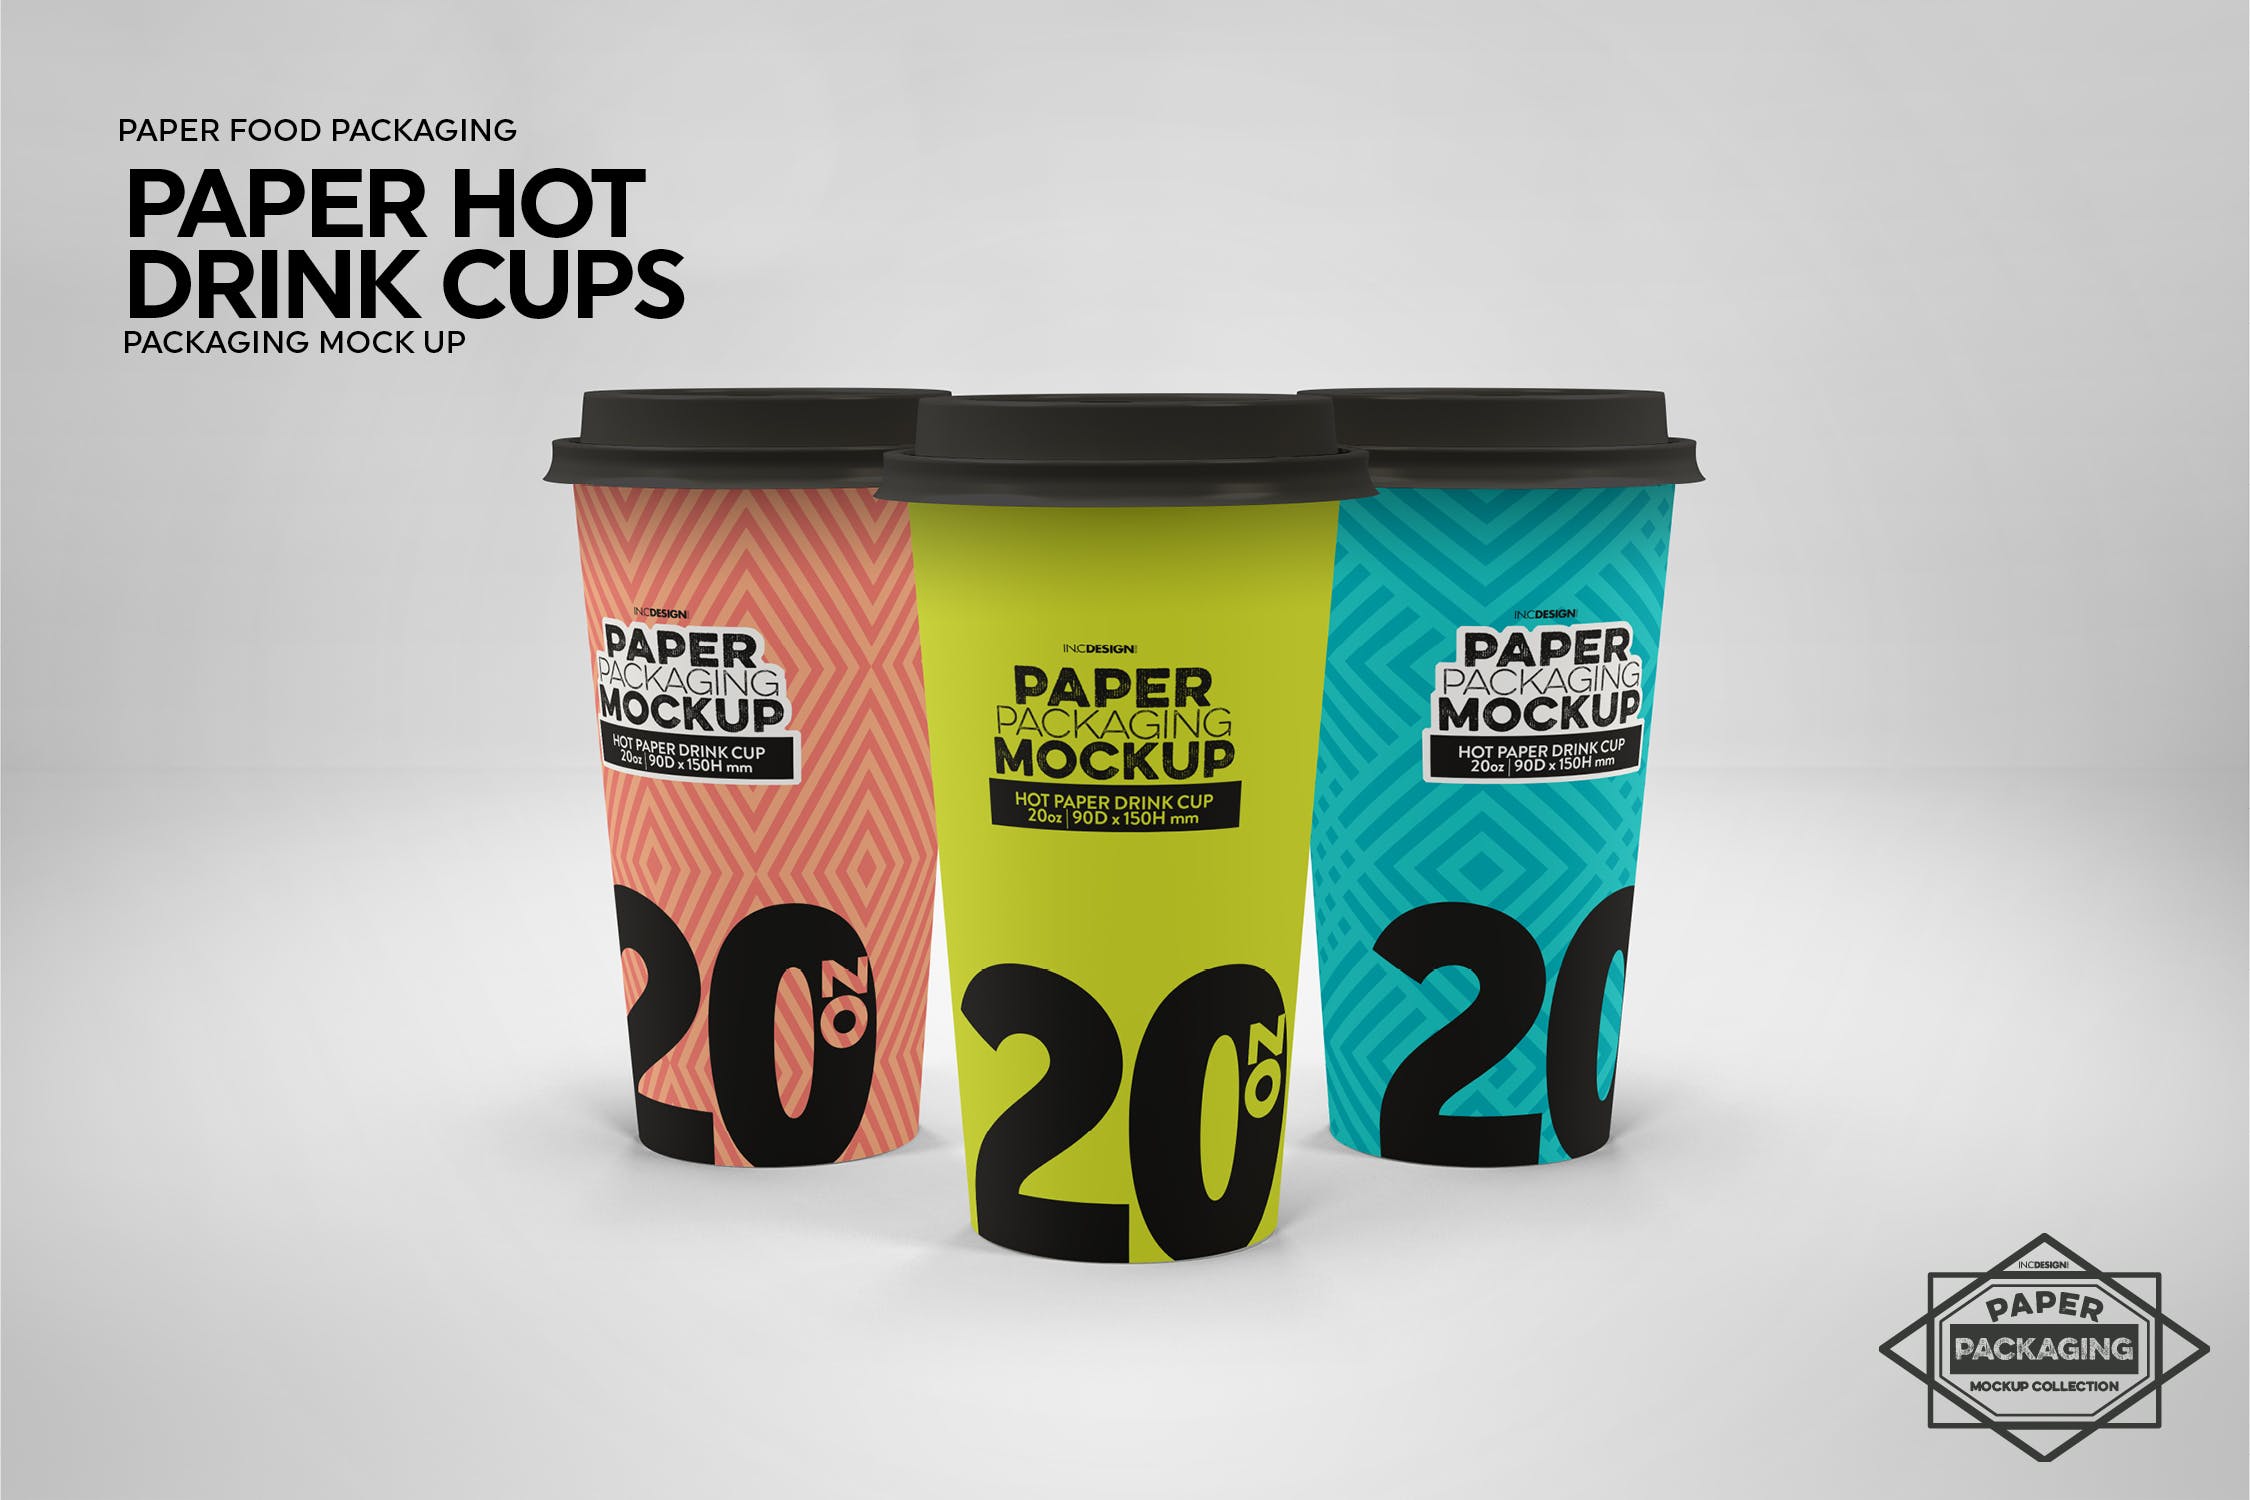 热饮一次性纸杯外观设计蚂蚁素材精选 Paper Hot Drink Cups Packaging Mockup插图(6)